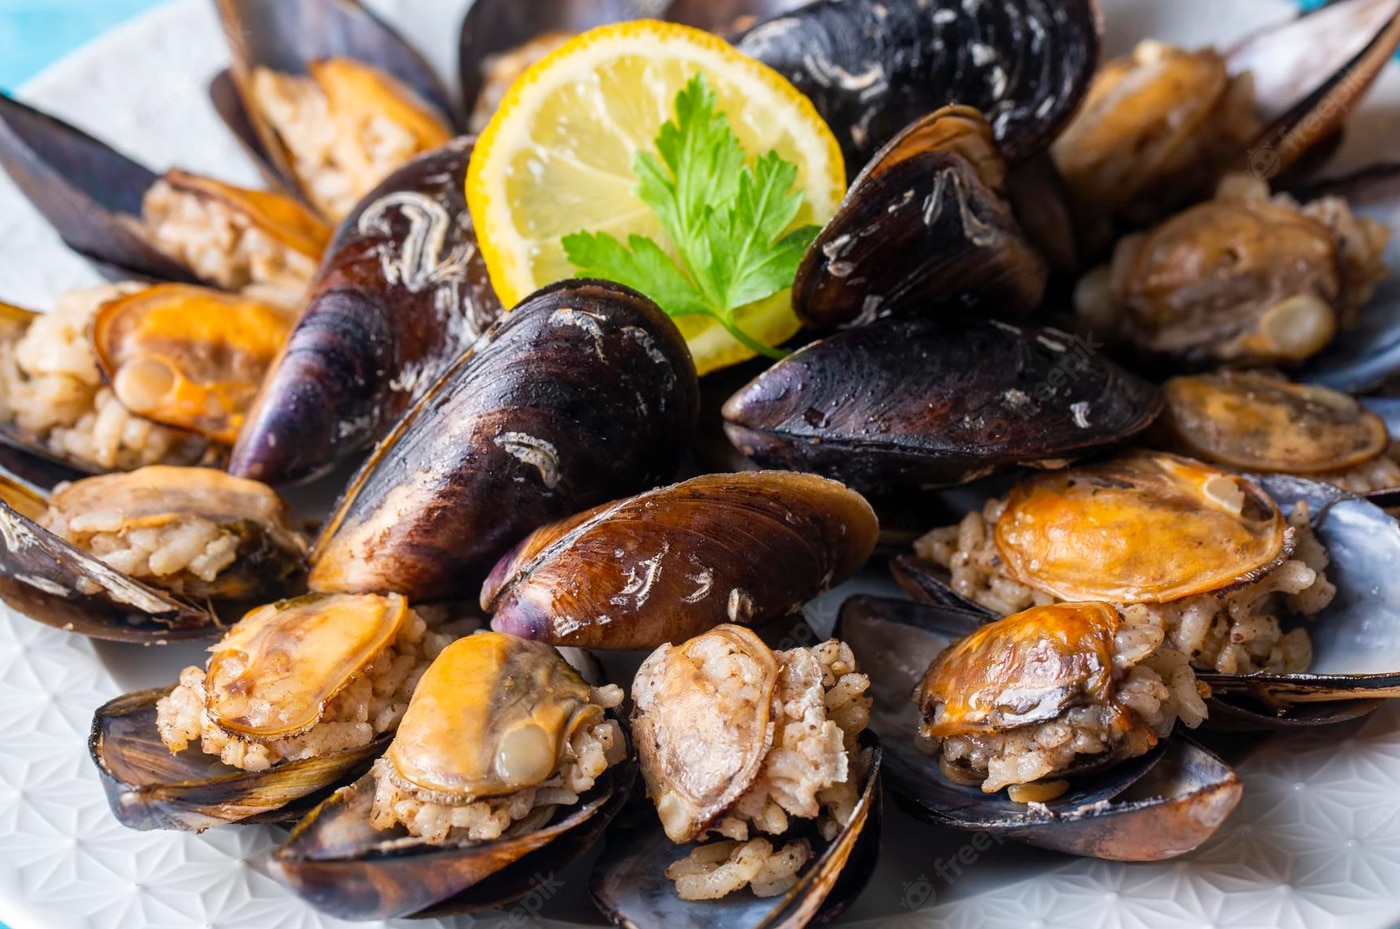 Midye Dolma is flavorful stuffed mussels